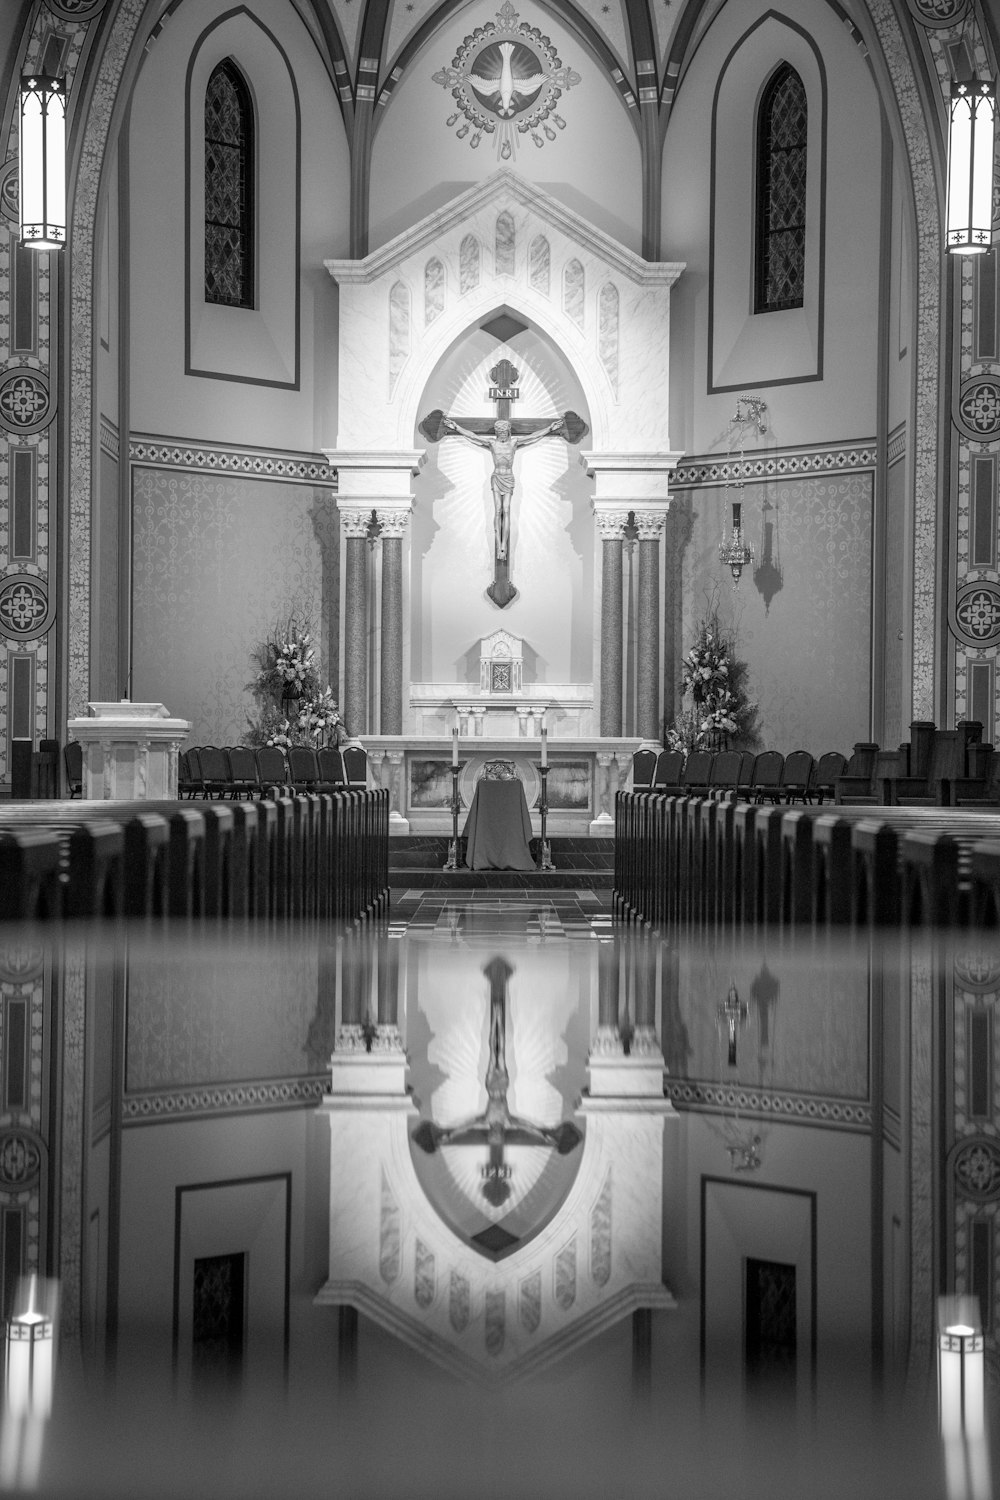 Una foto en blanco y negro del interior de una iglesia